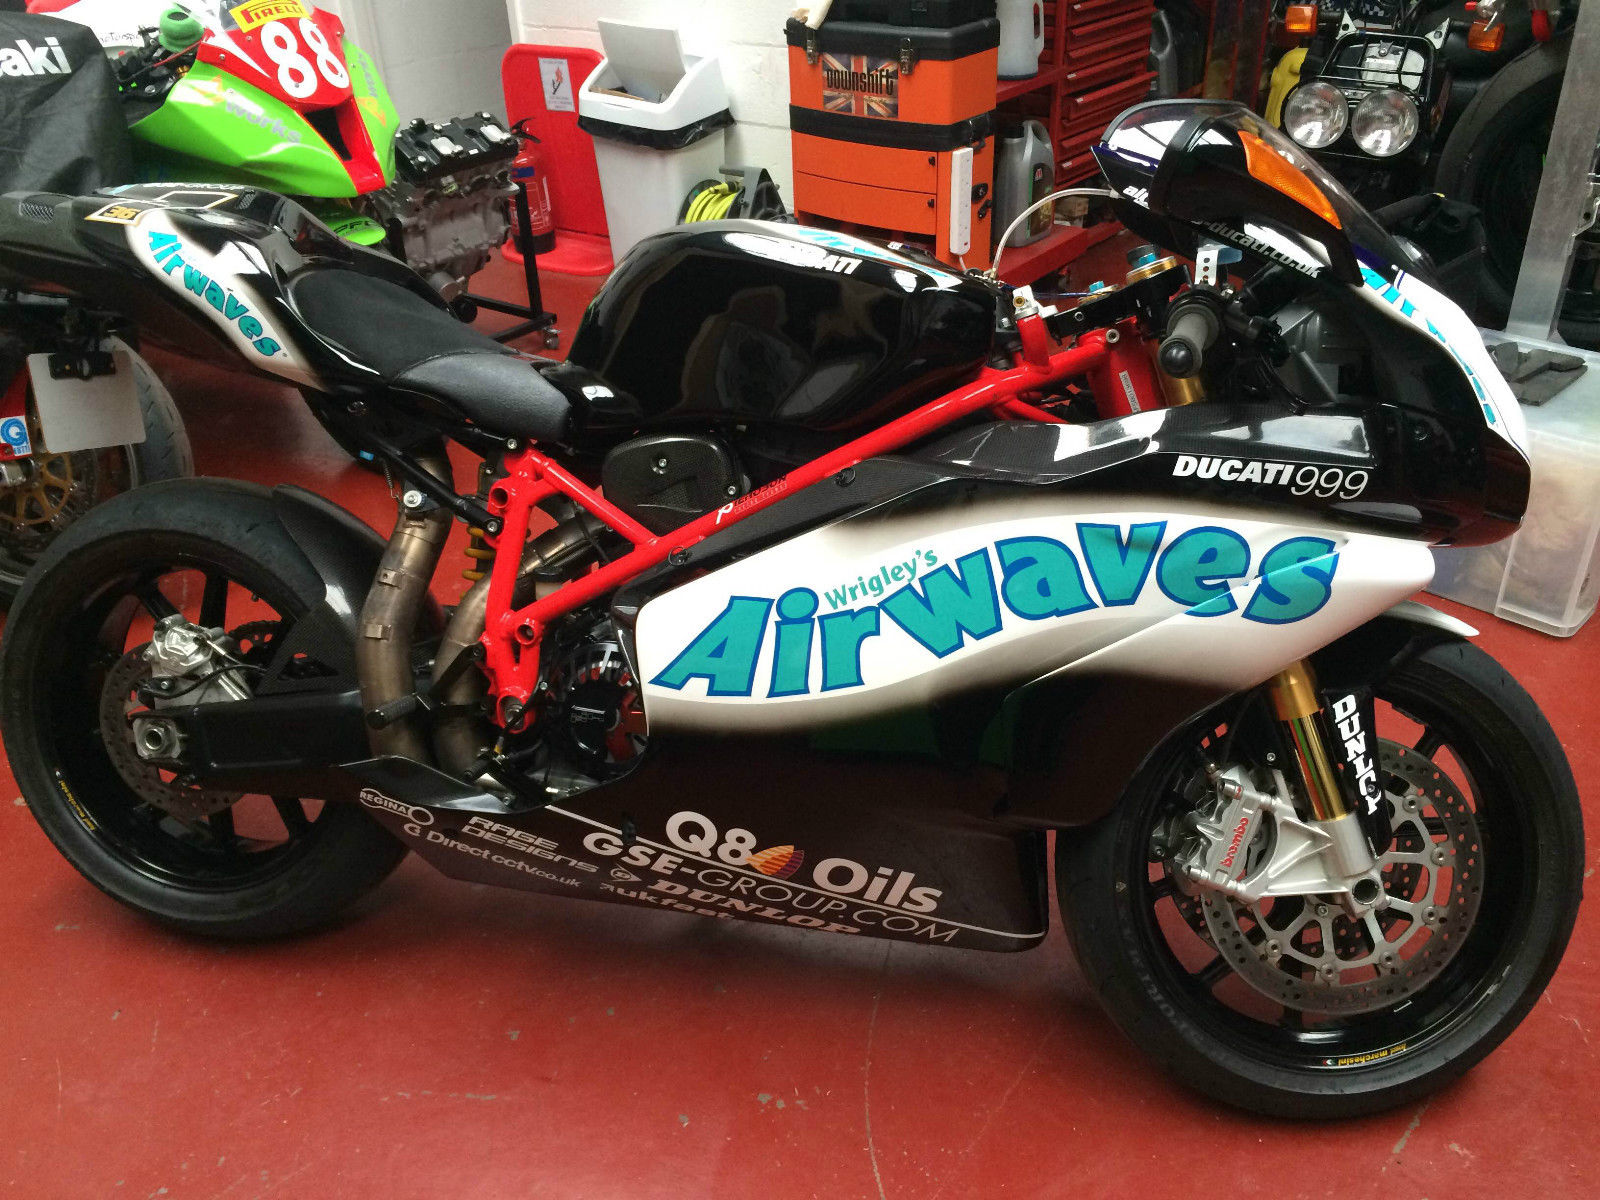 Ducati 999s - Airwaves 01.JPG